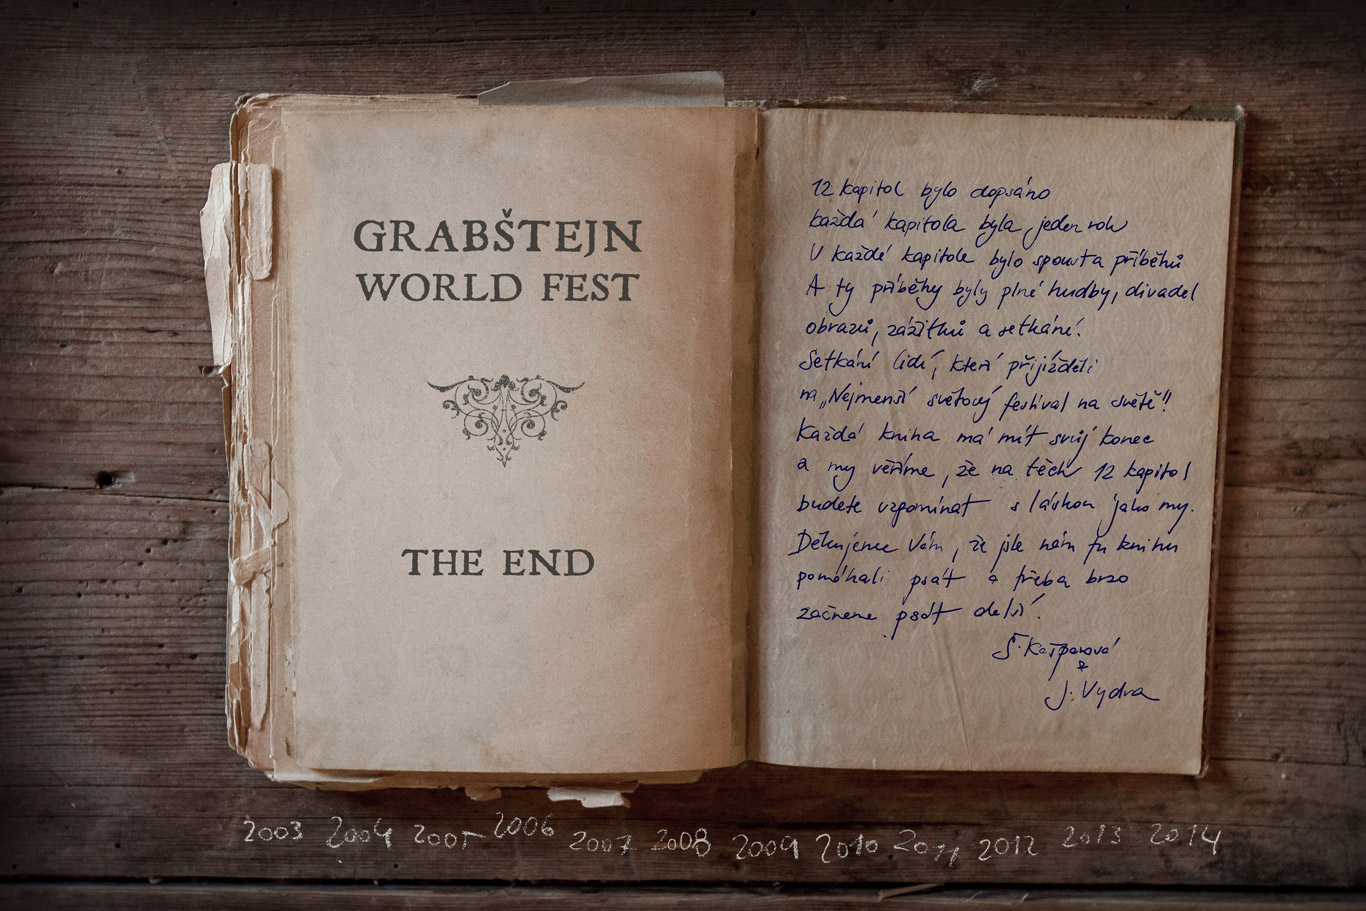 The End of Grabstejn Worldfest